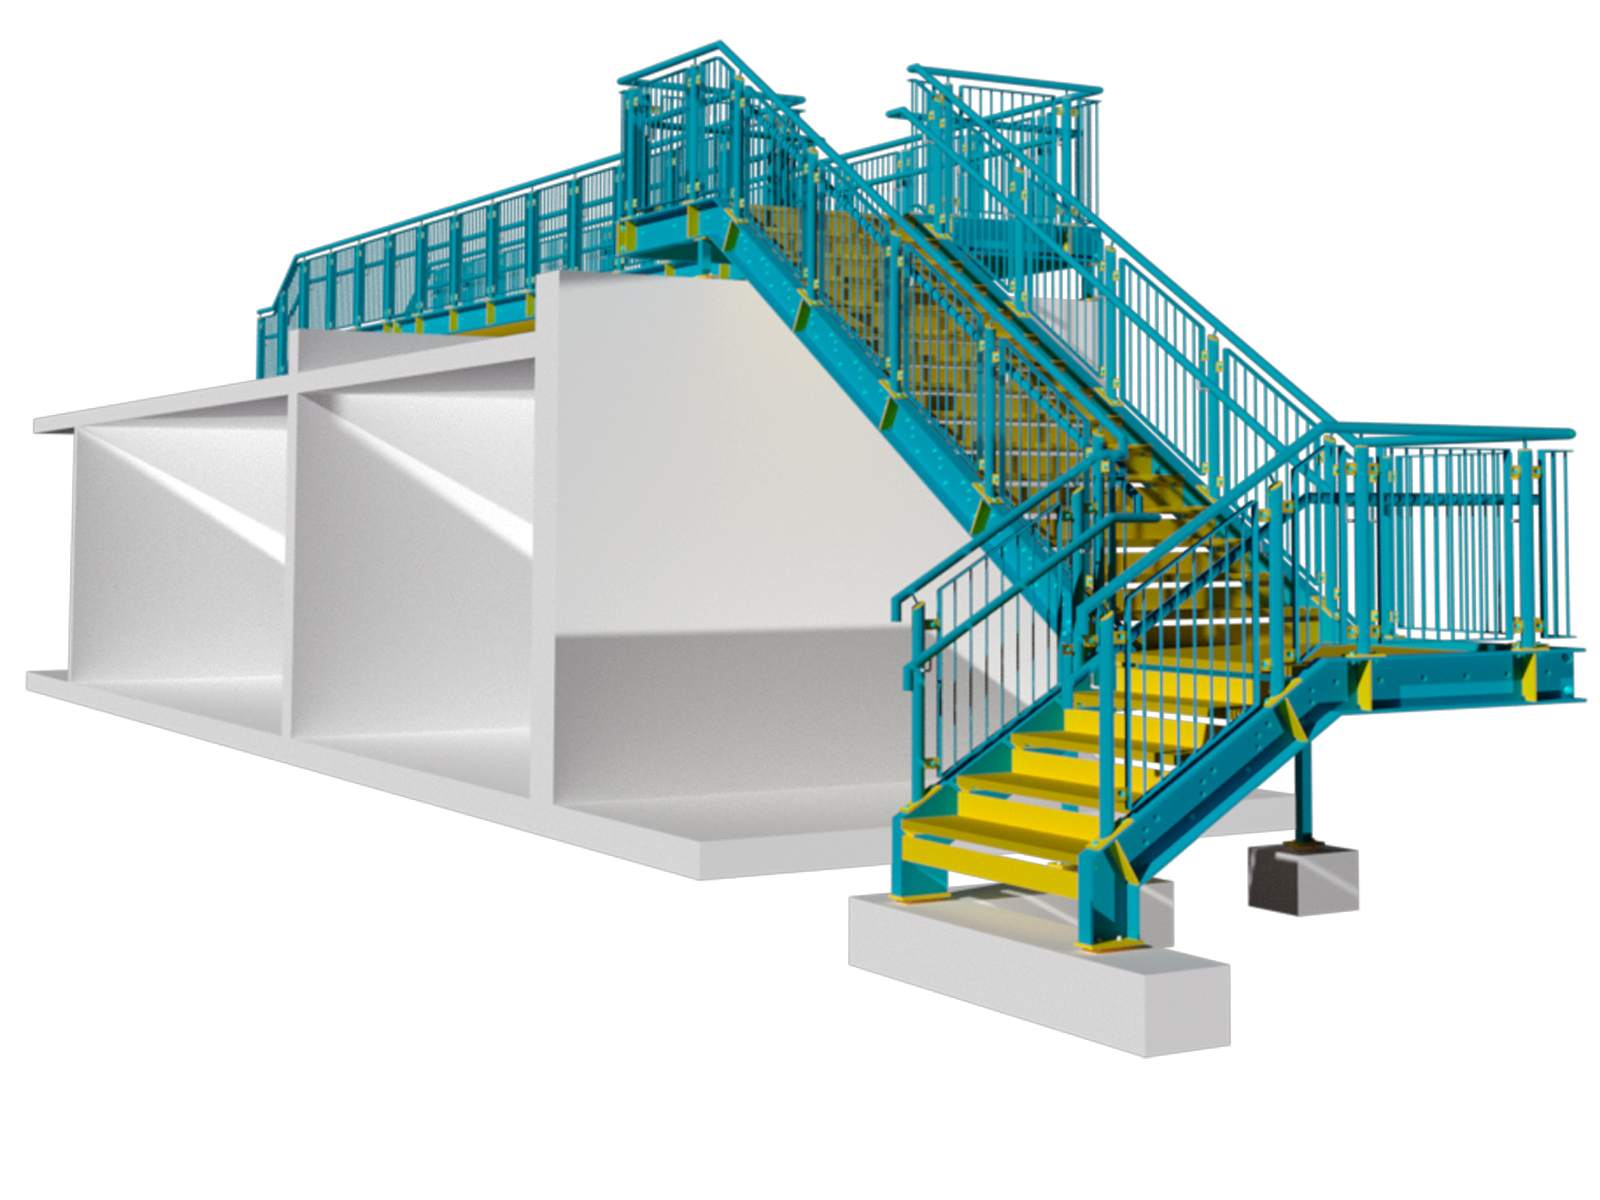 CADPROM Konstruktionsbüro in Neuss: Stahlbaukonstruktion, Treppen, Balkonanlagen, Industriehallen, Übergänge, Glasgeländer, Rampen, Bühnen